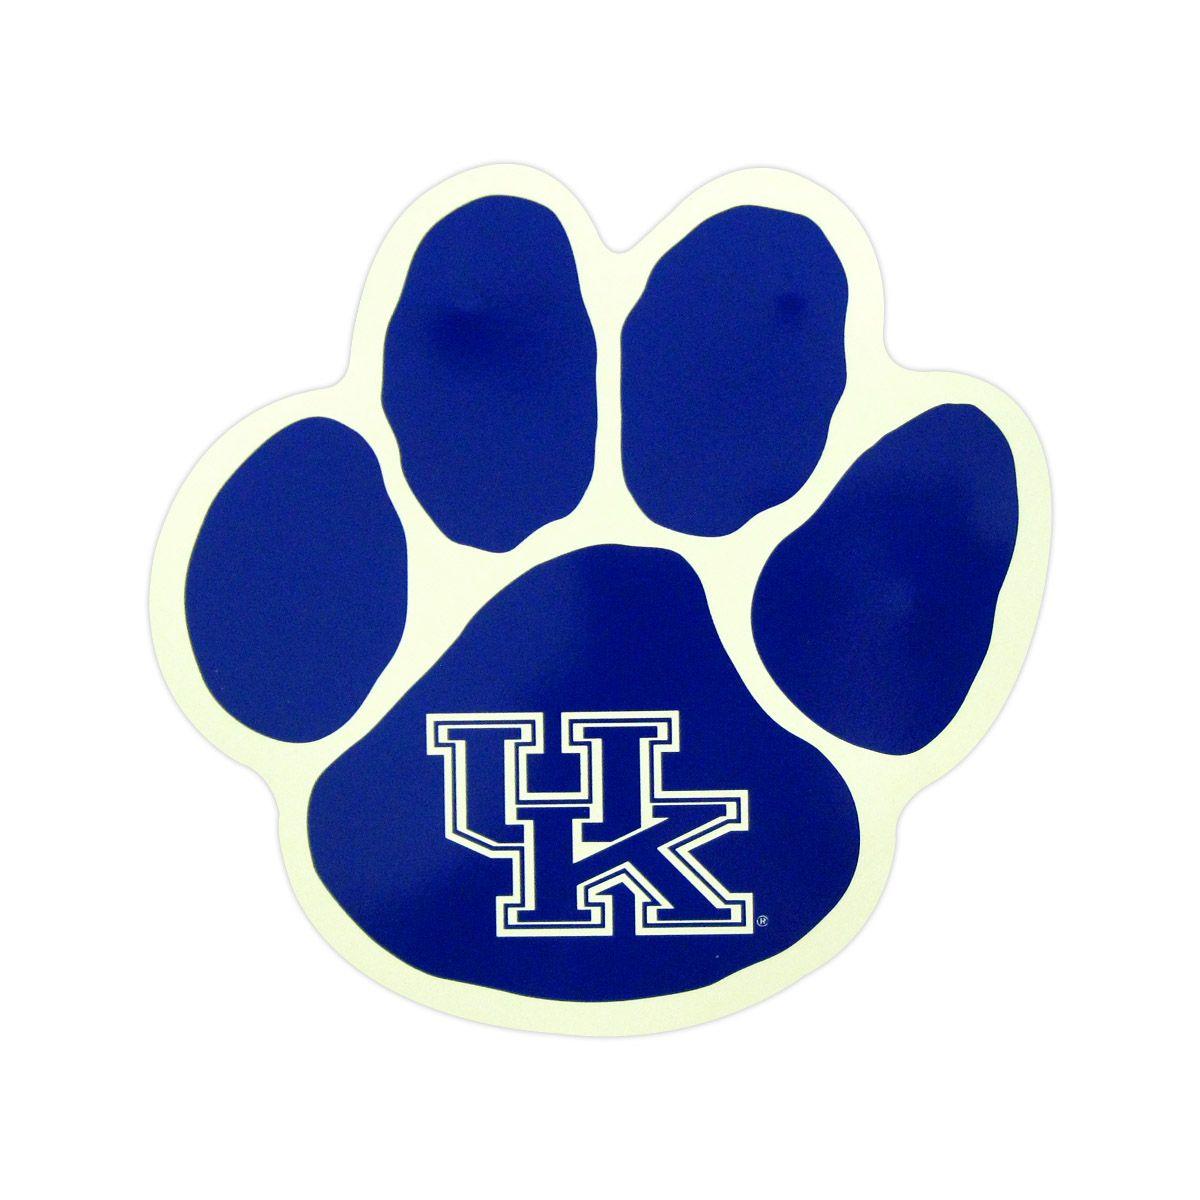 U of K Logo - Uk Logos